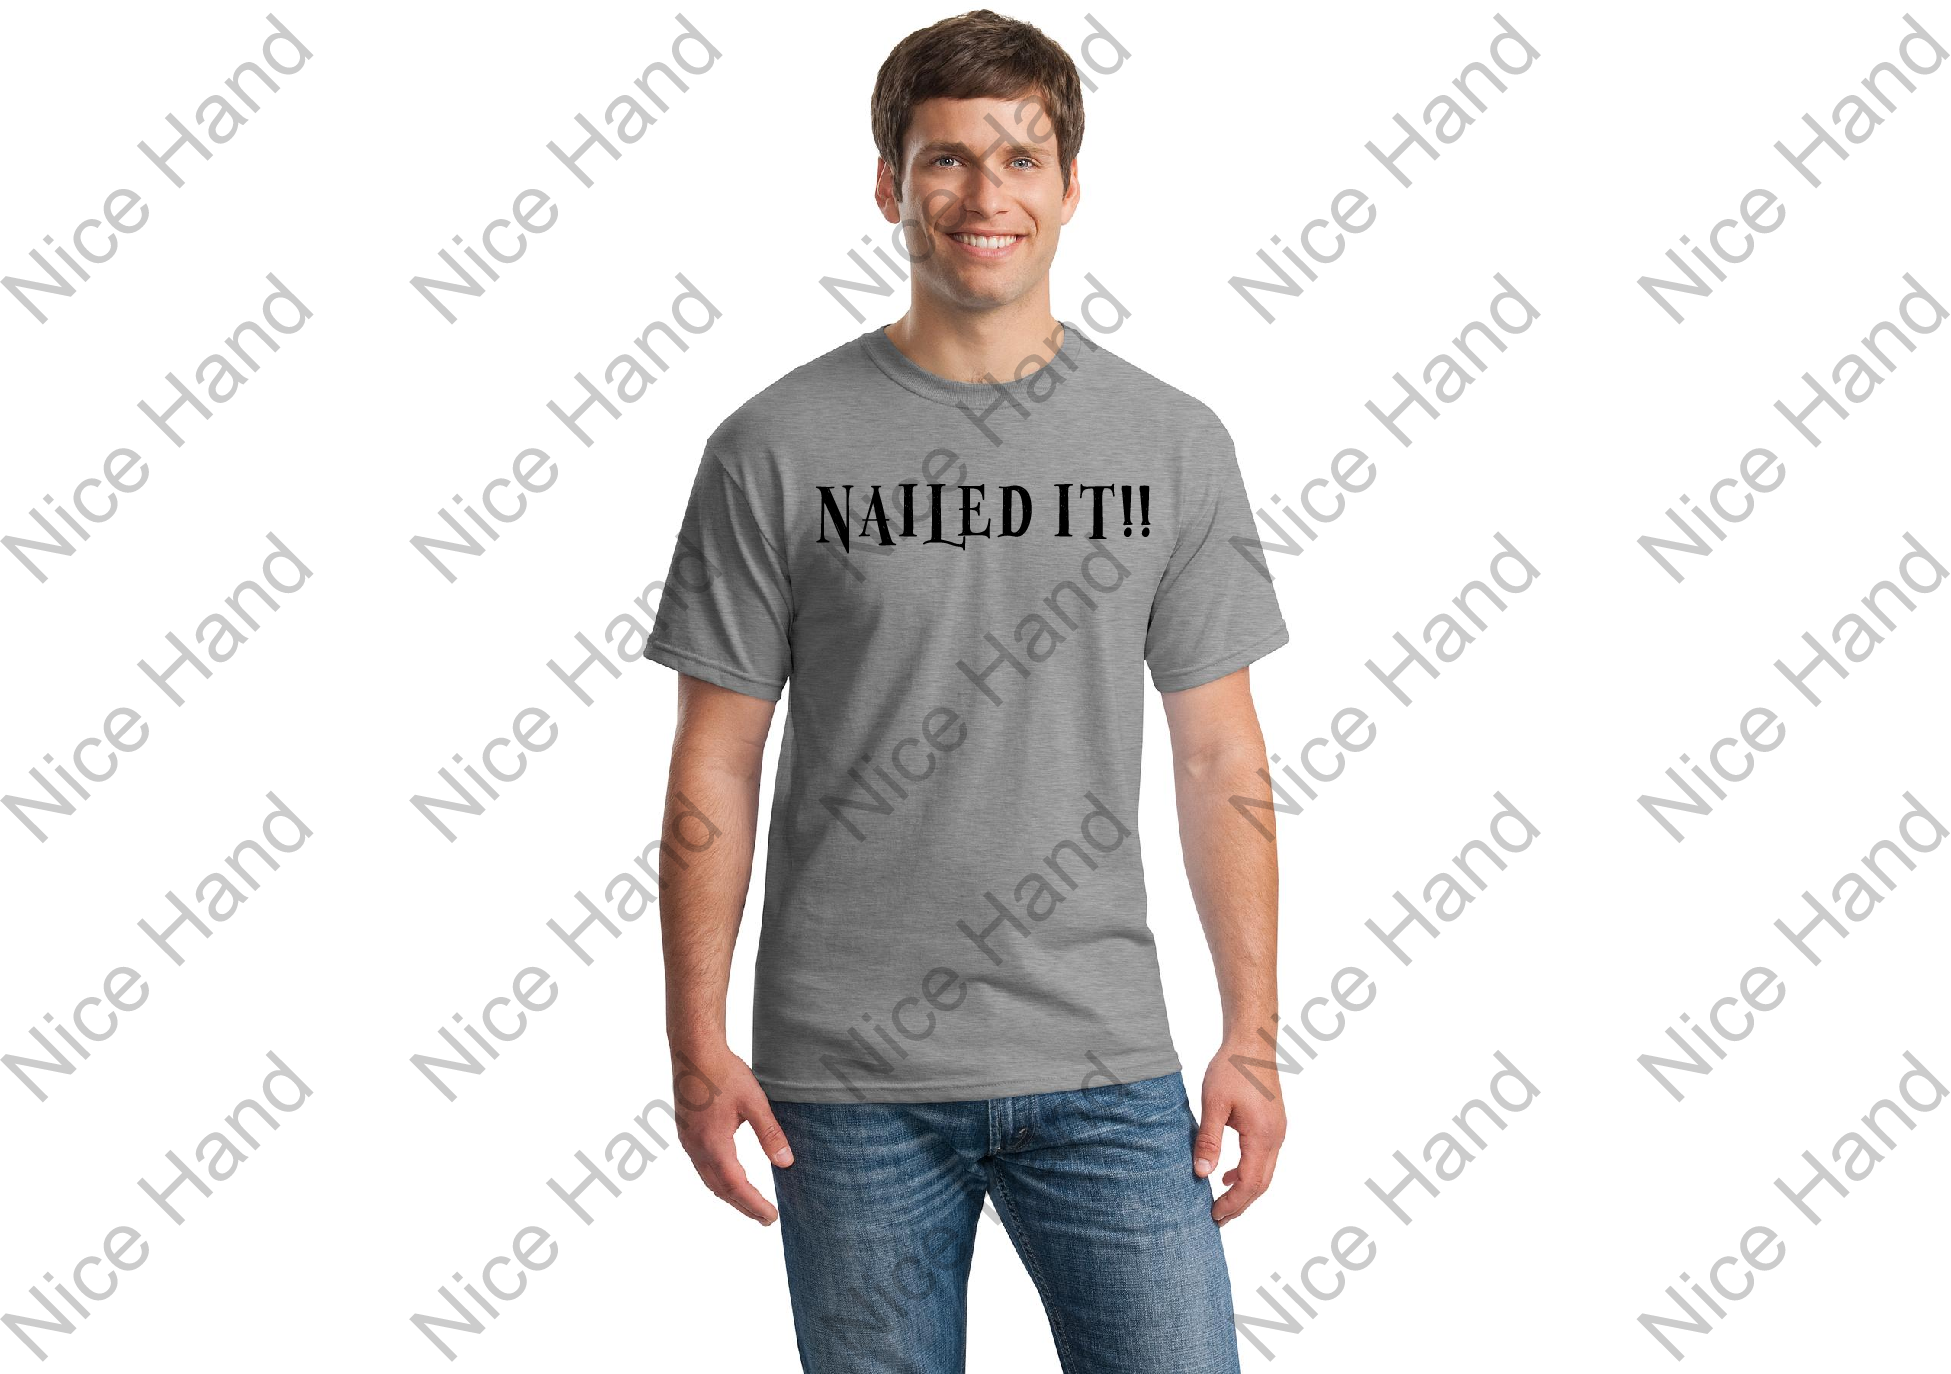 Nailed it!! T-shirt - NaileditGrey